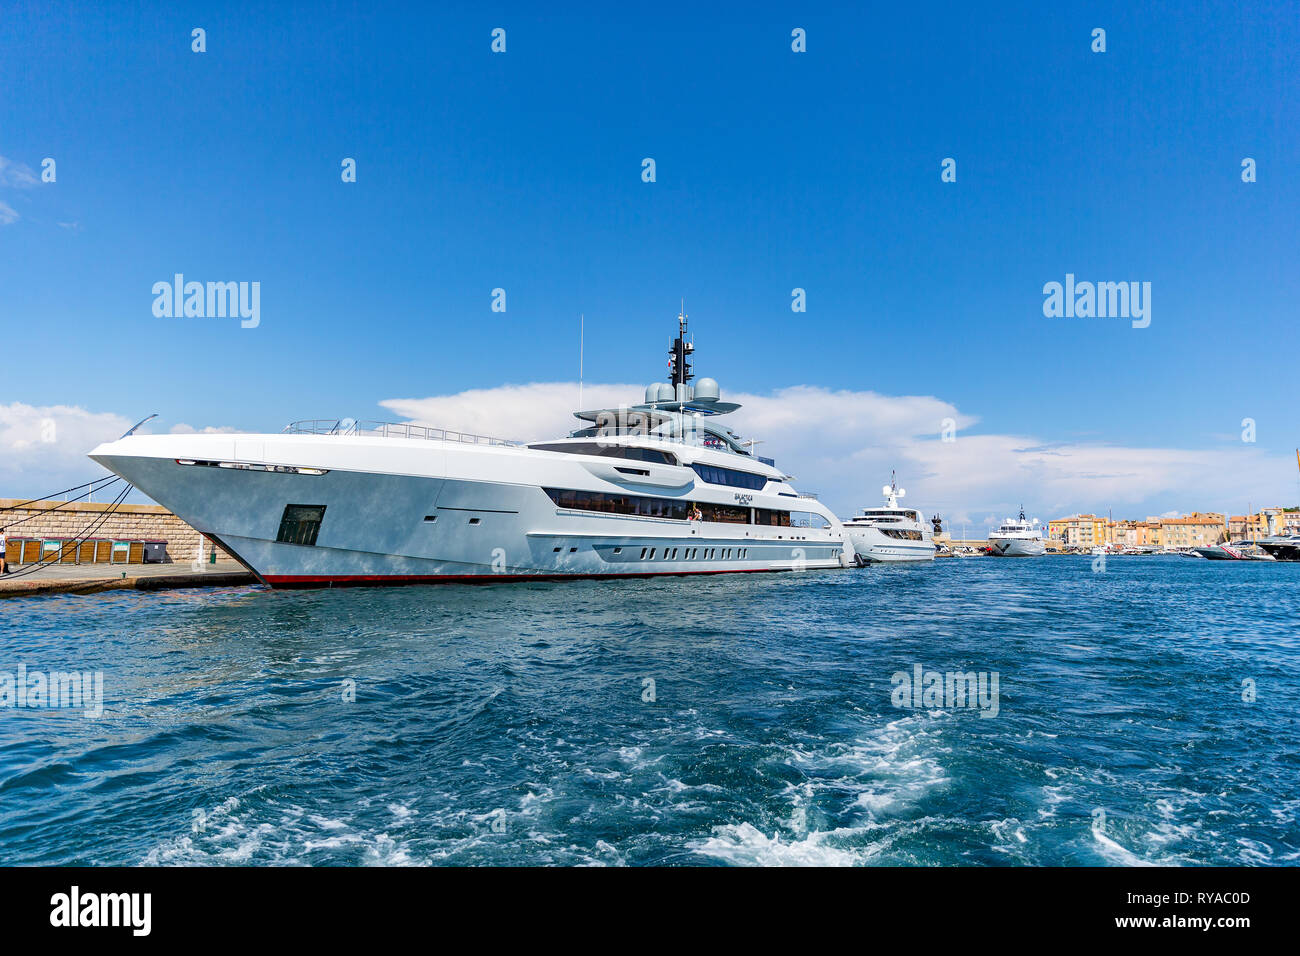 Yacht im Eingang zum Hafen vor den historischen Gebaeuden in Saint Tropez, Frankreich, 01.09.2018 Bildnachweis: Mario Hommes / HH-Photography Stock Photo